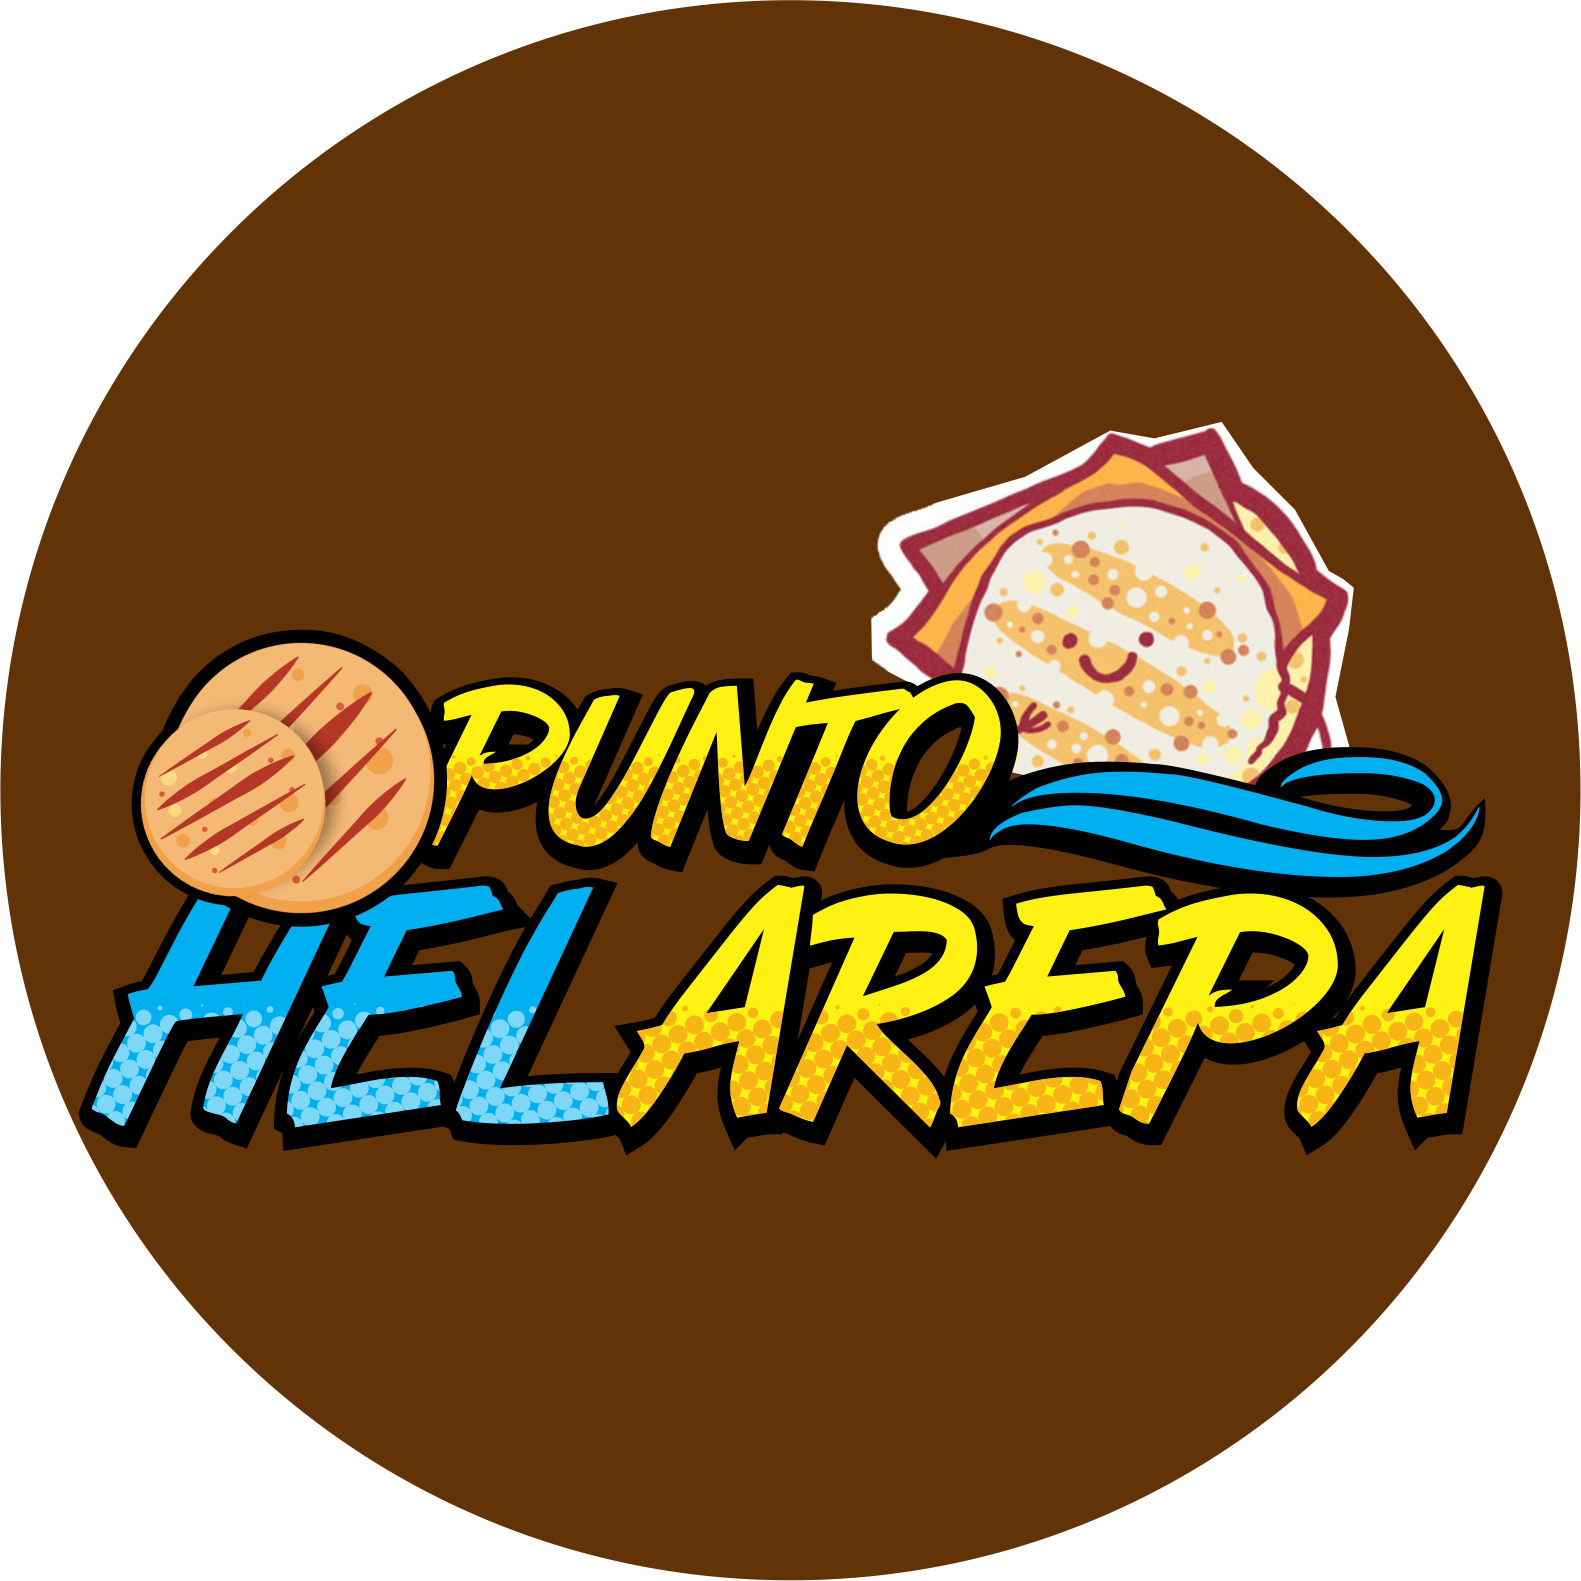 Punto HelArepa Apulo 